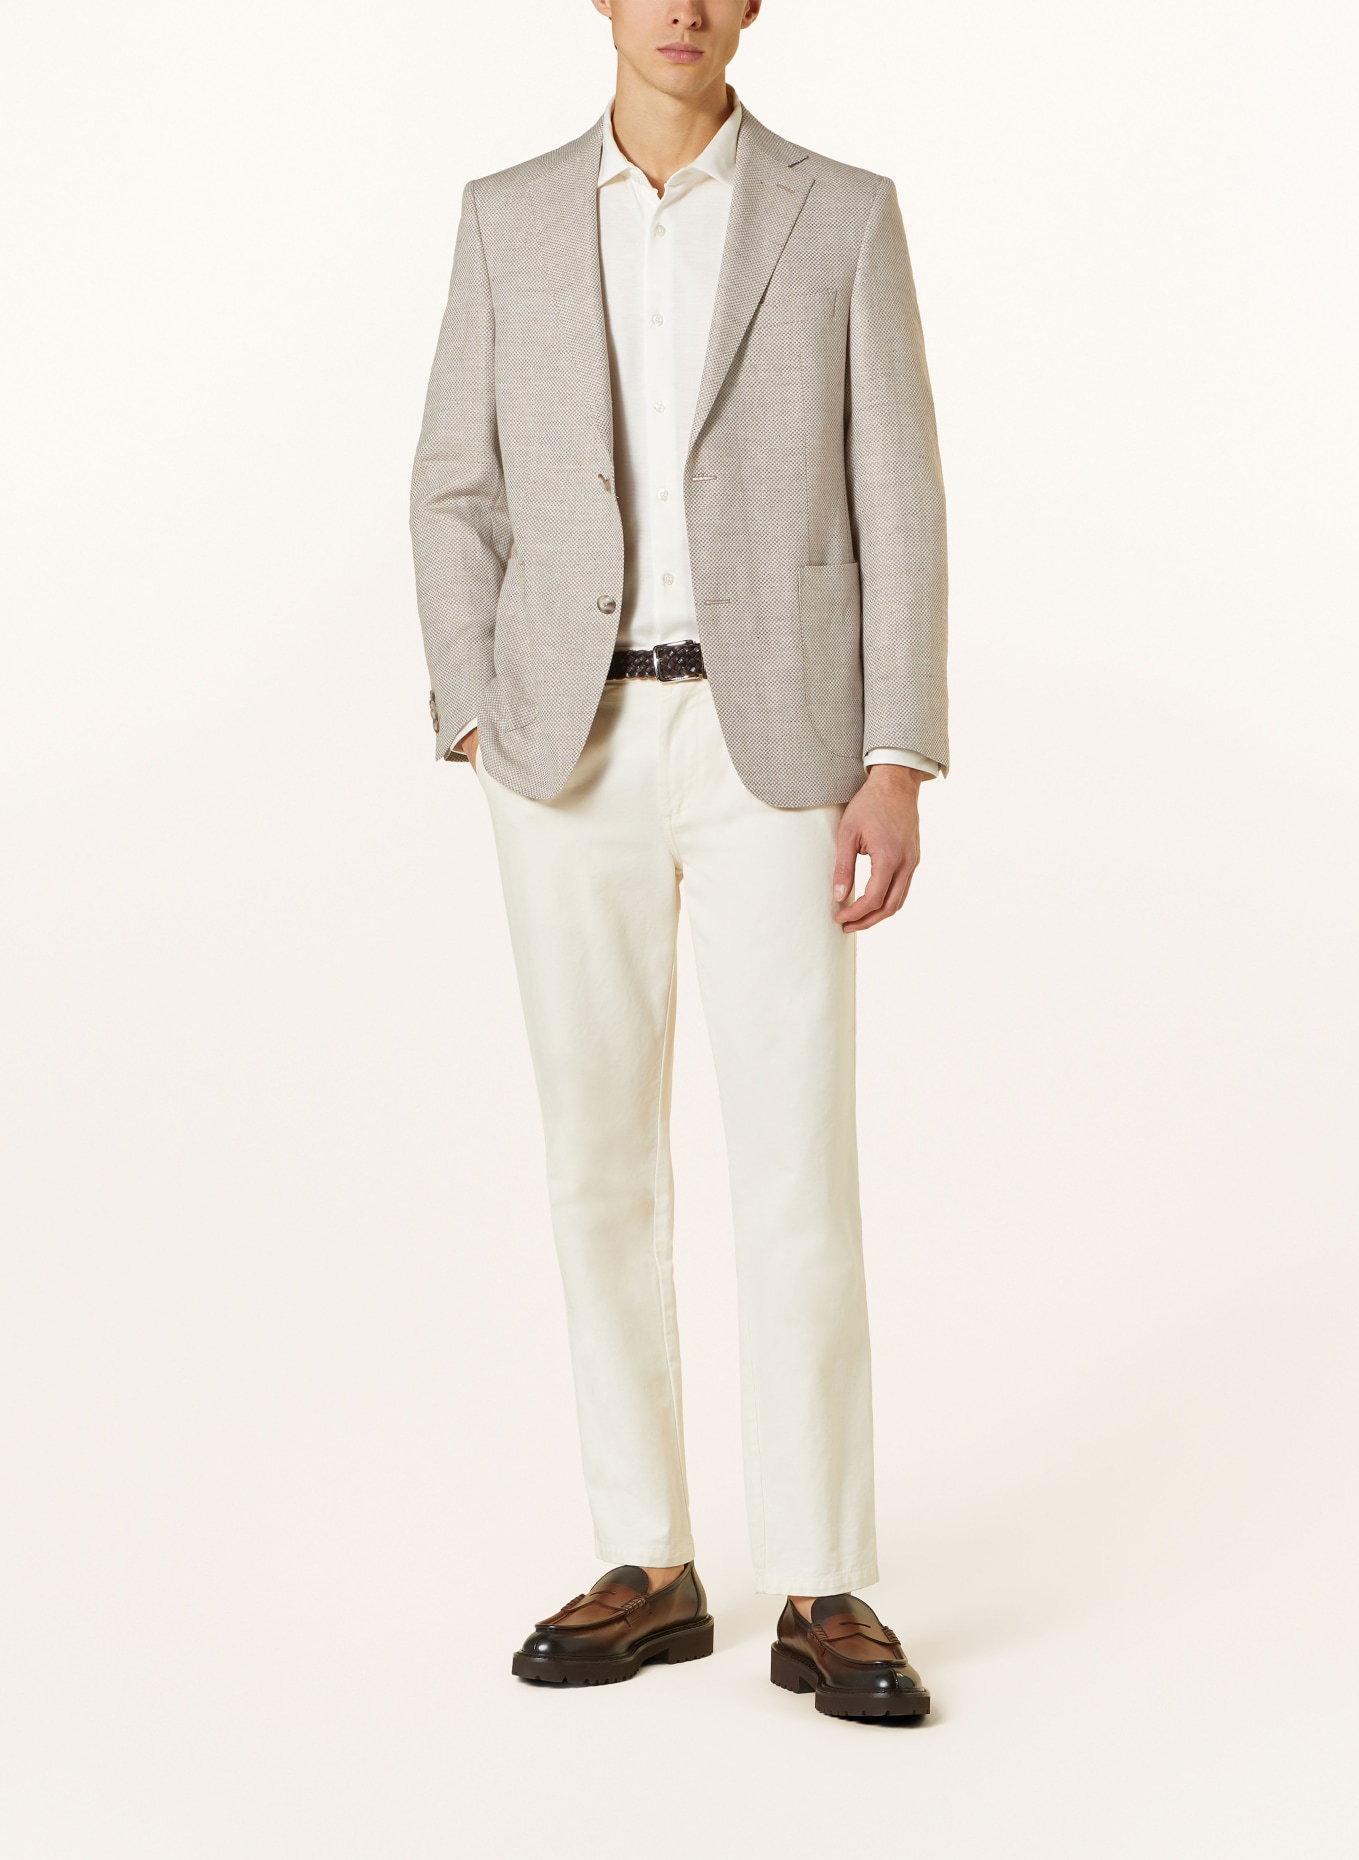 EDUARD DRESSLER Tailored jacket comfort fit with linen, Color: BEIGE (Image 2)